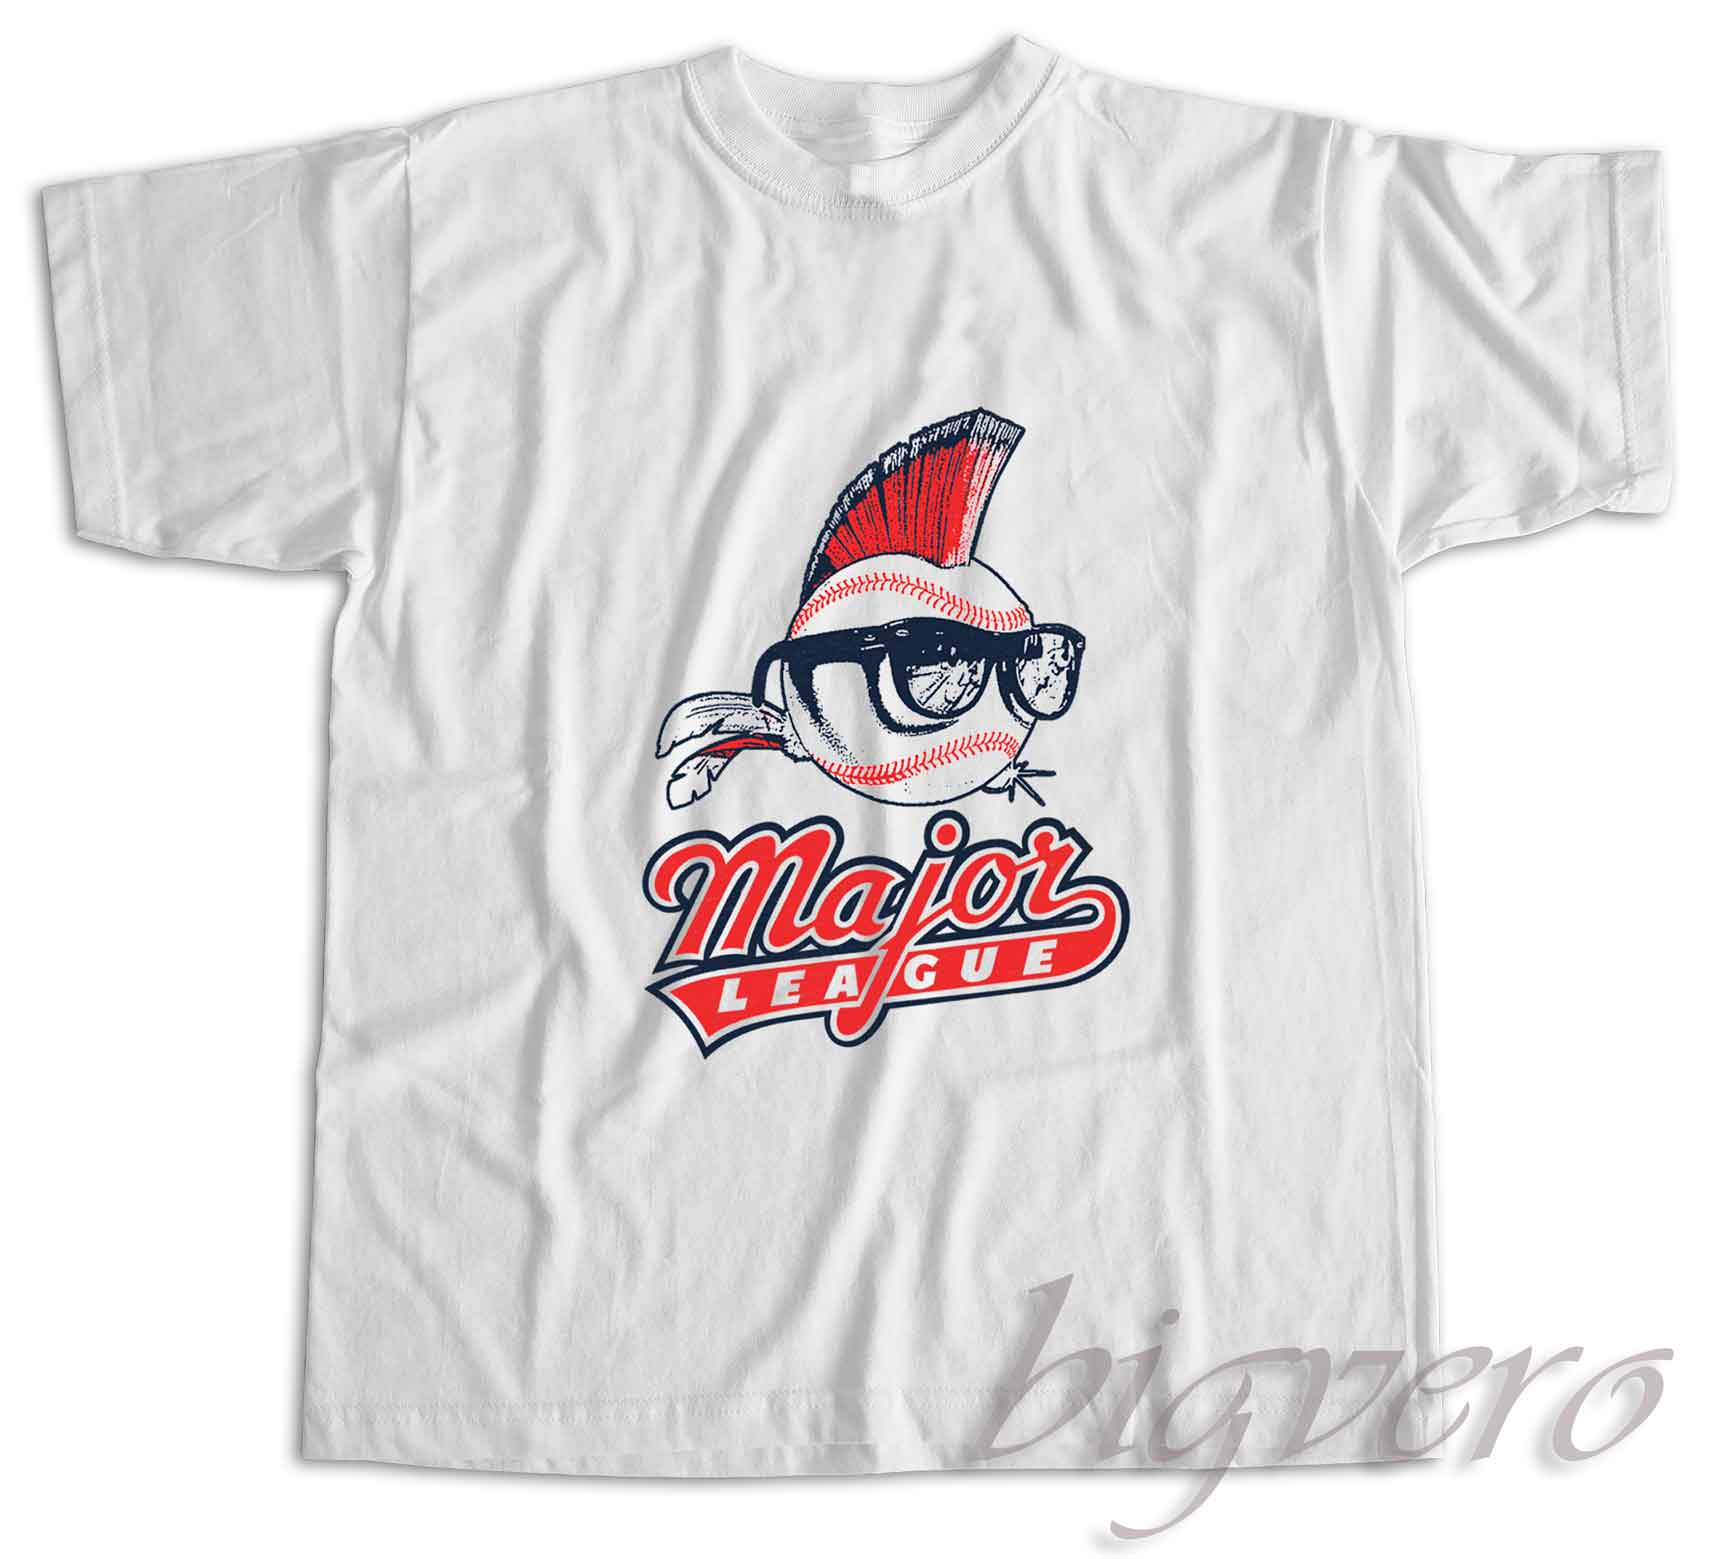 Check and Buy Now! Major League T-Shirt - Unique Fashion Store Design